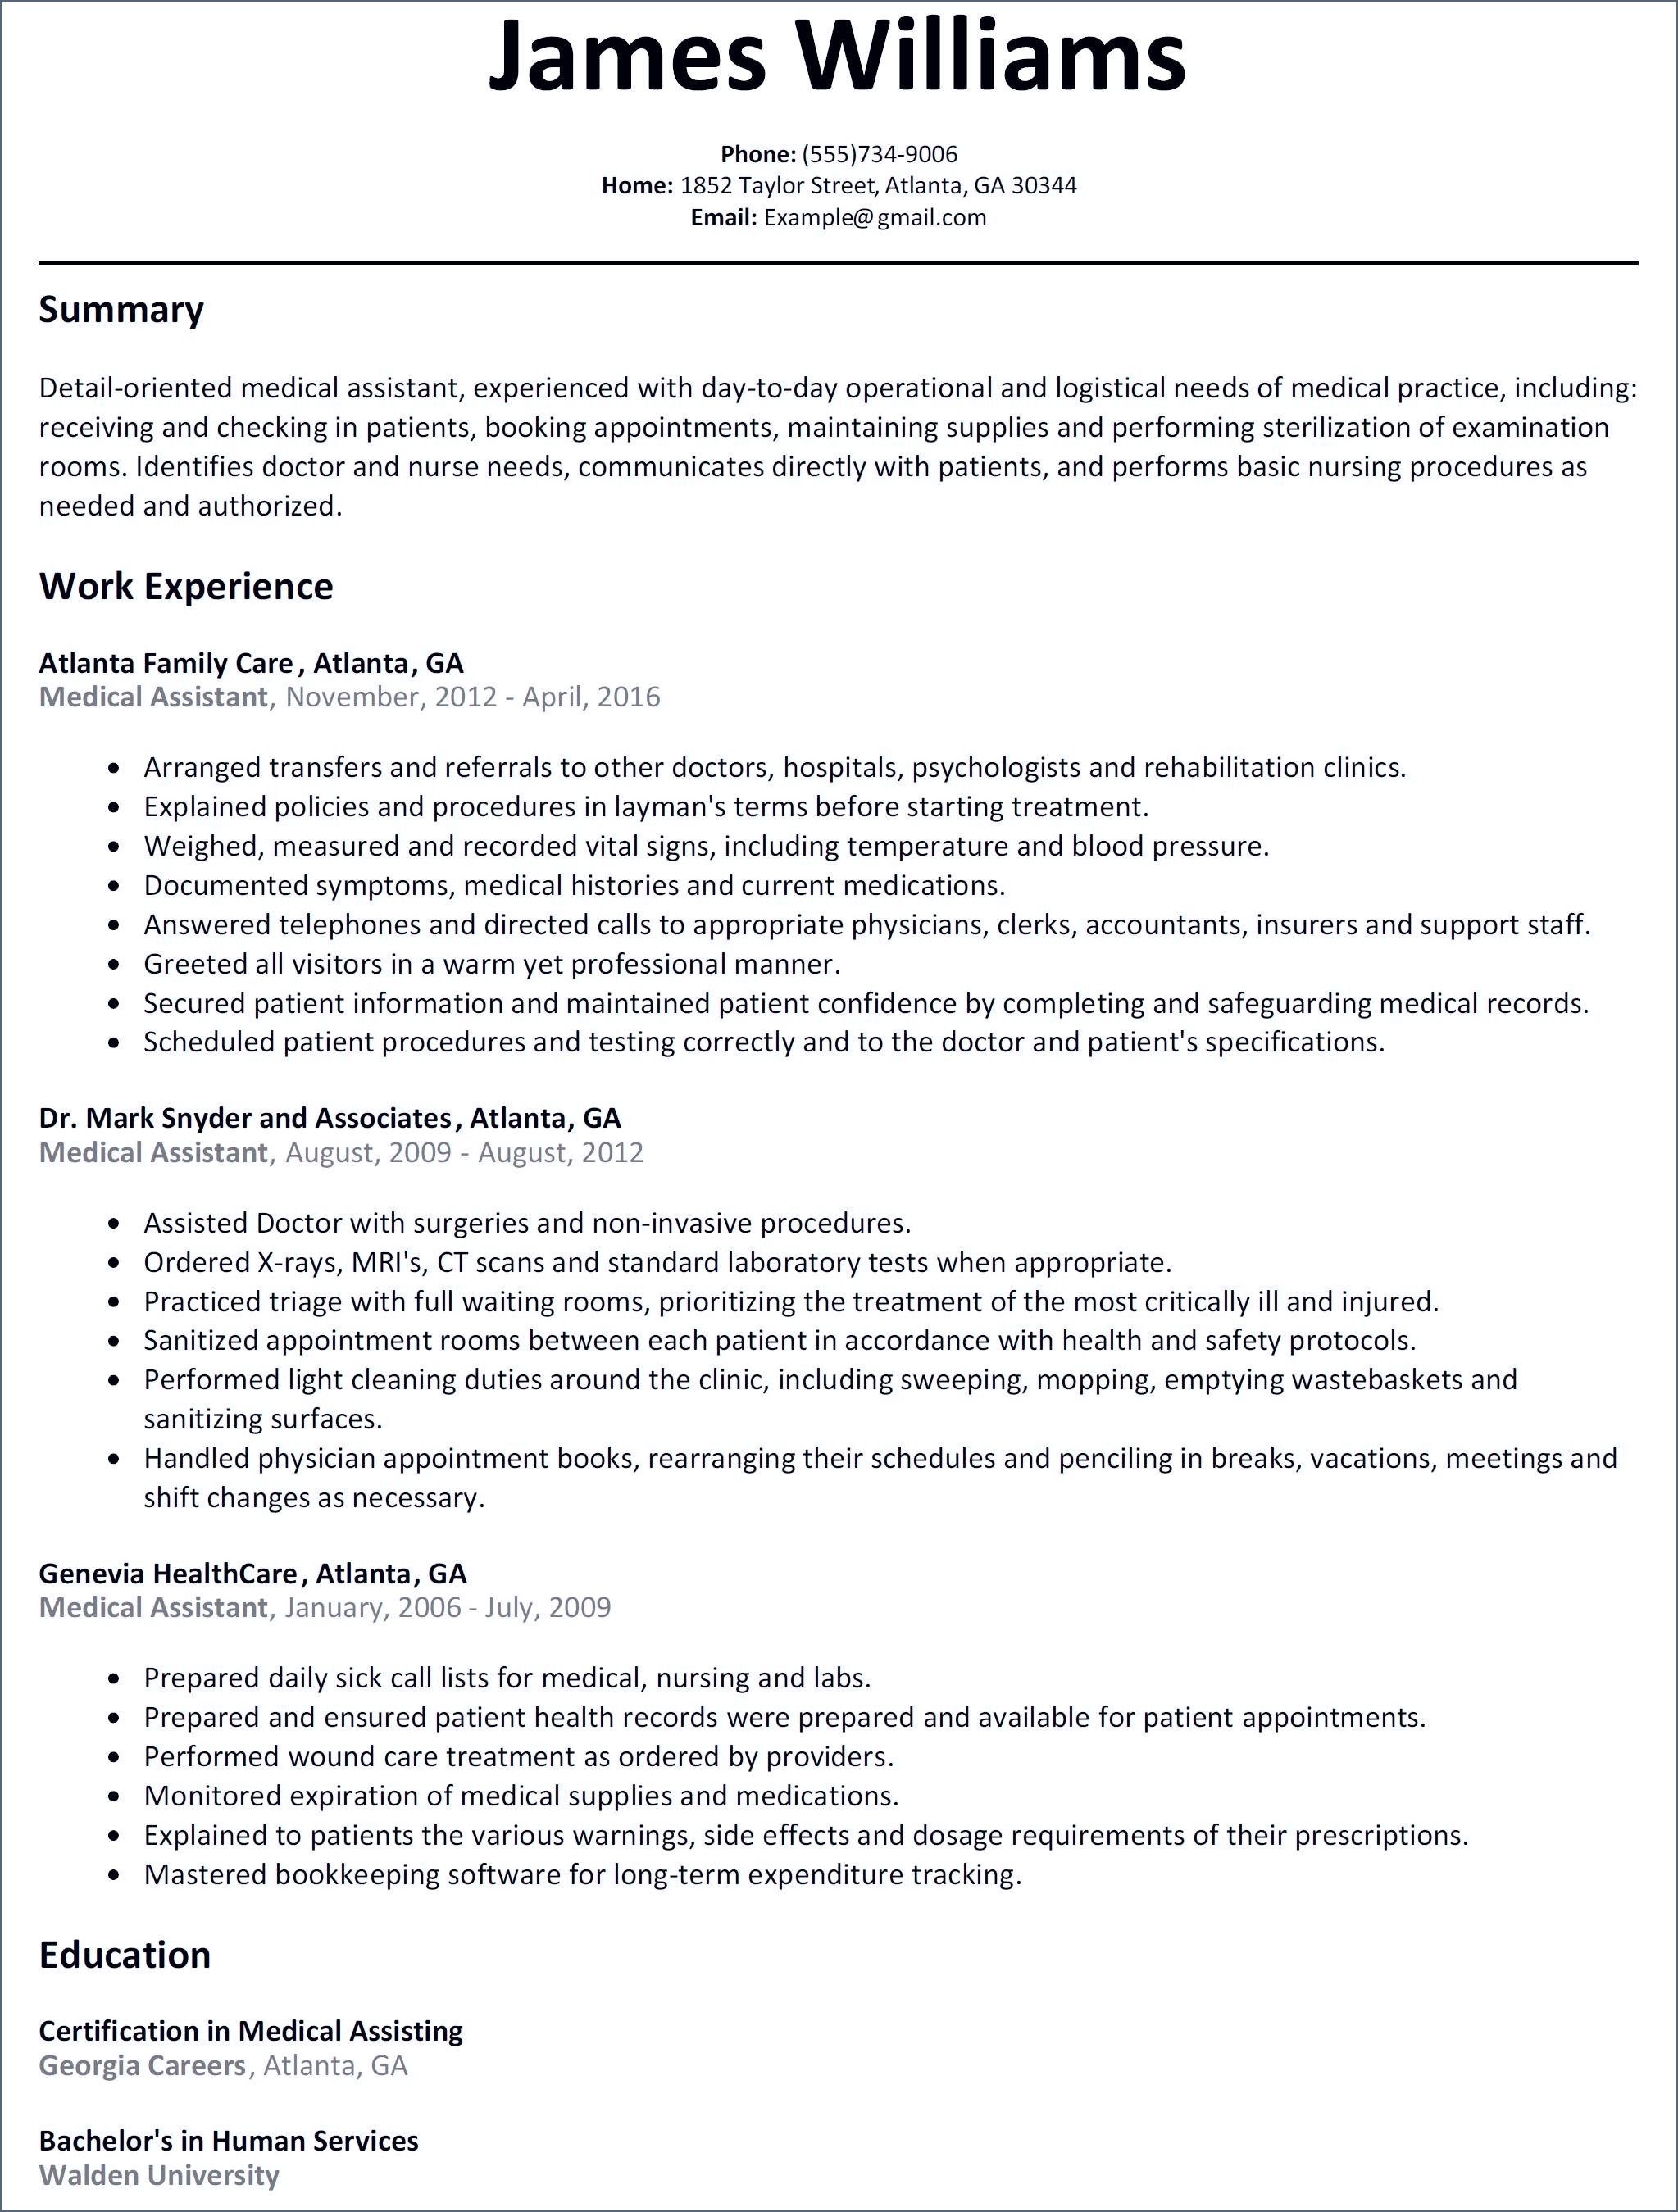 best resume format for job hoppers